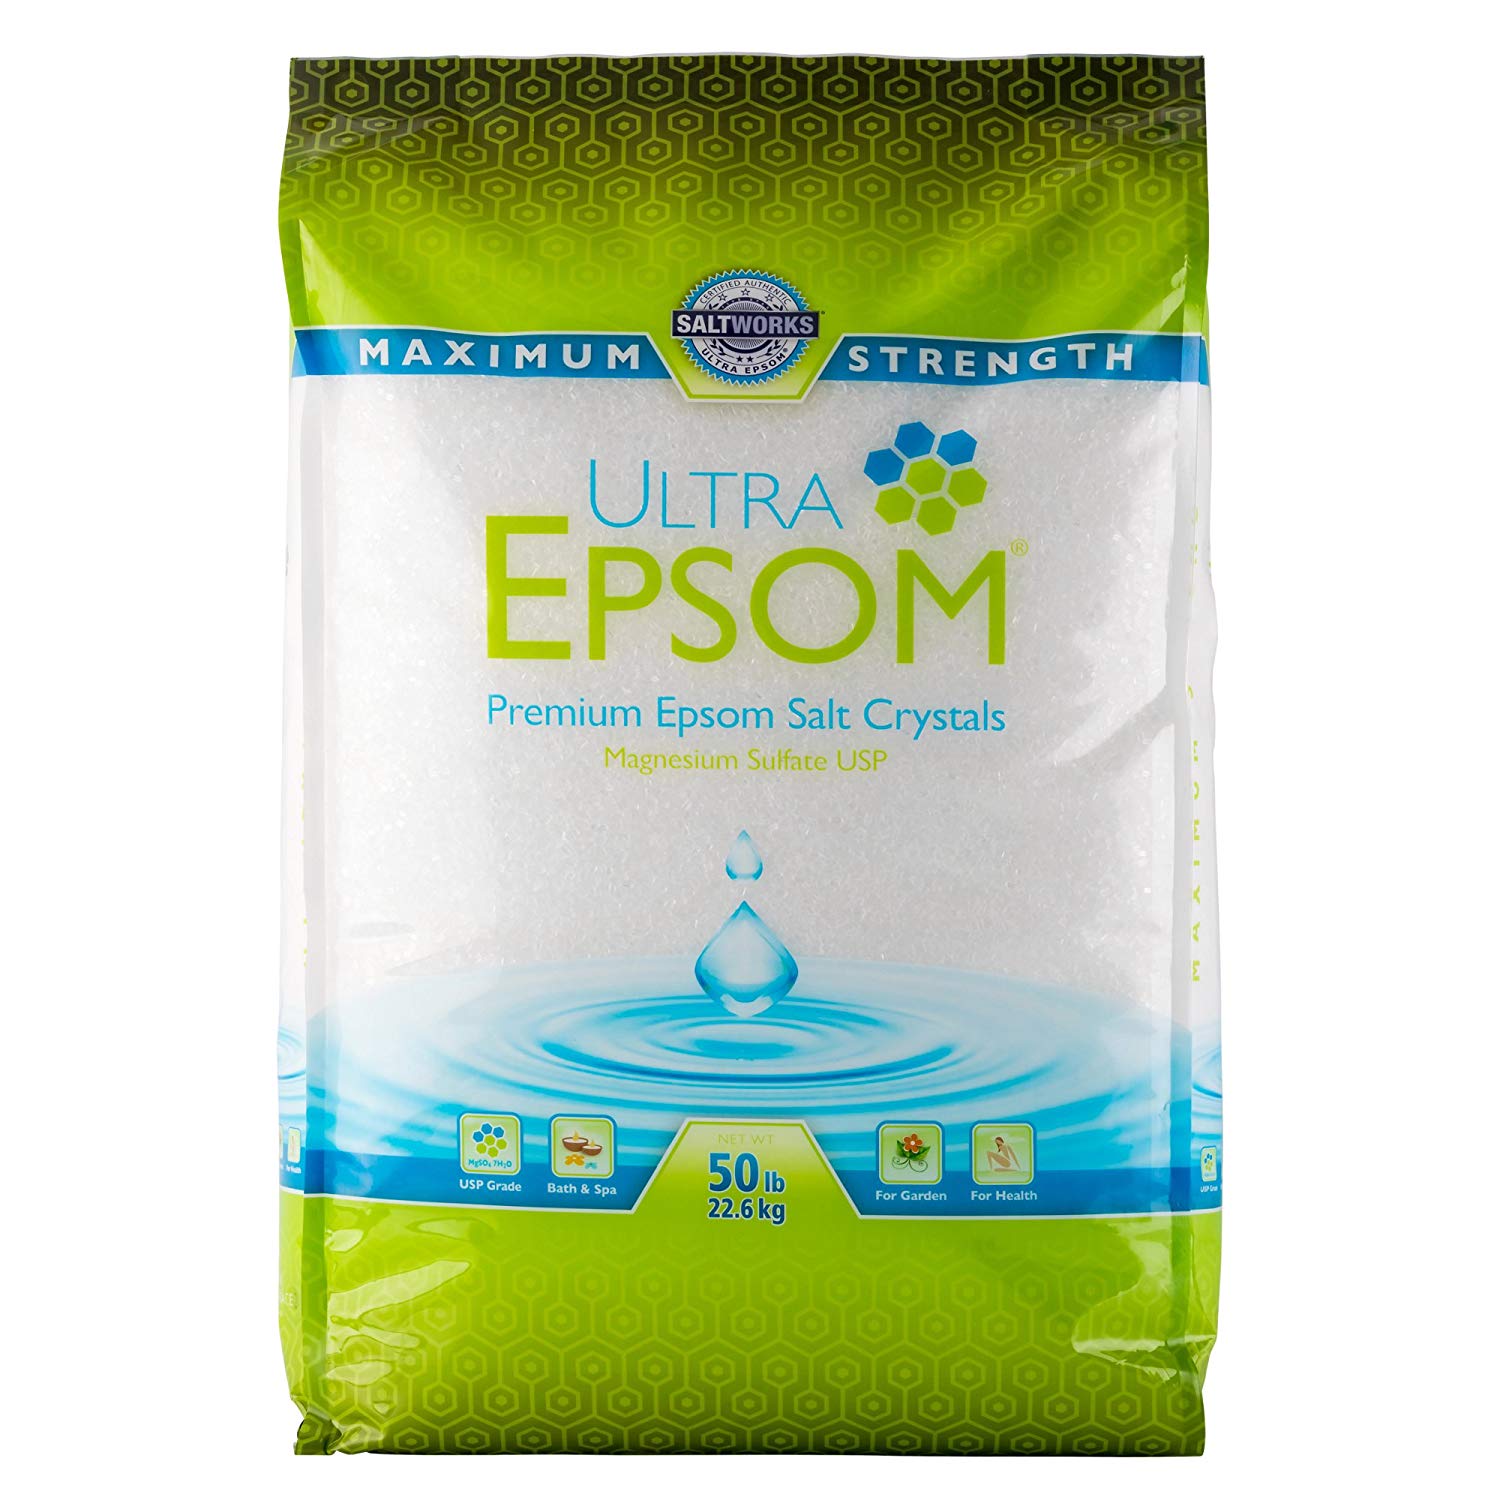 Ultra_Epsom_Premium_Epsom_Salt